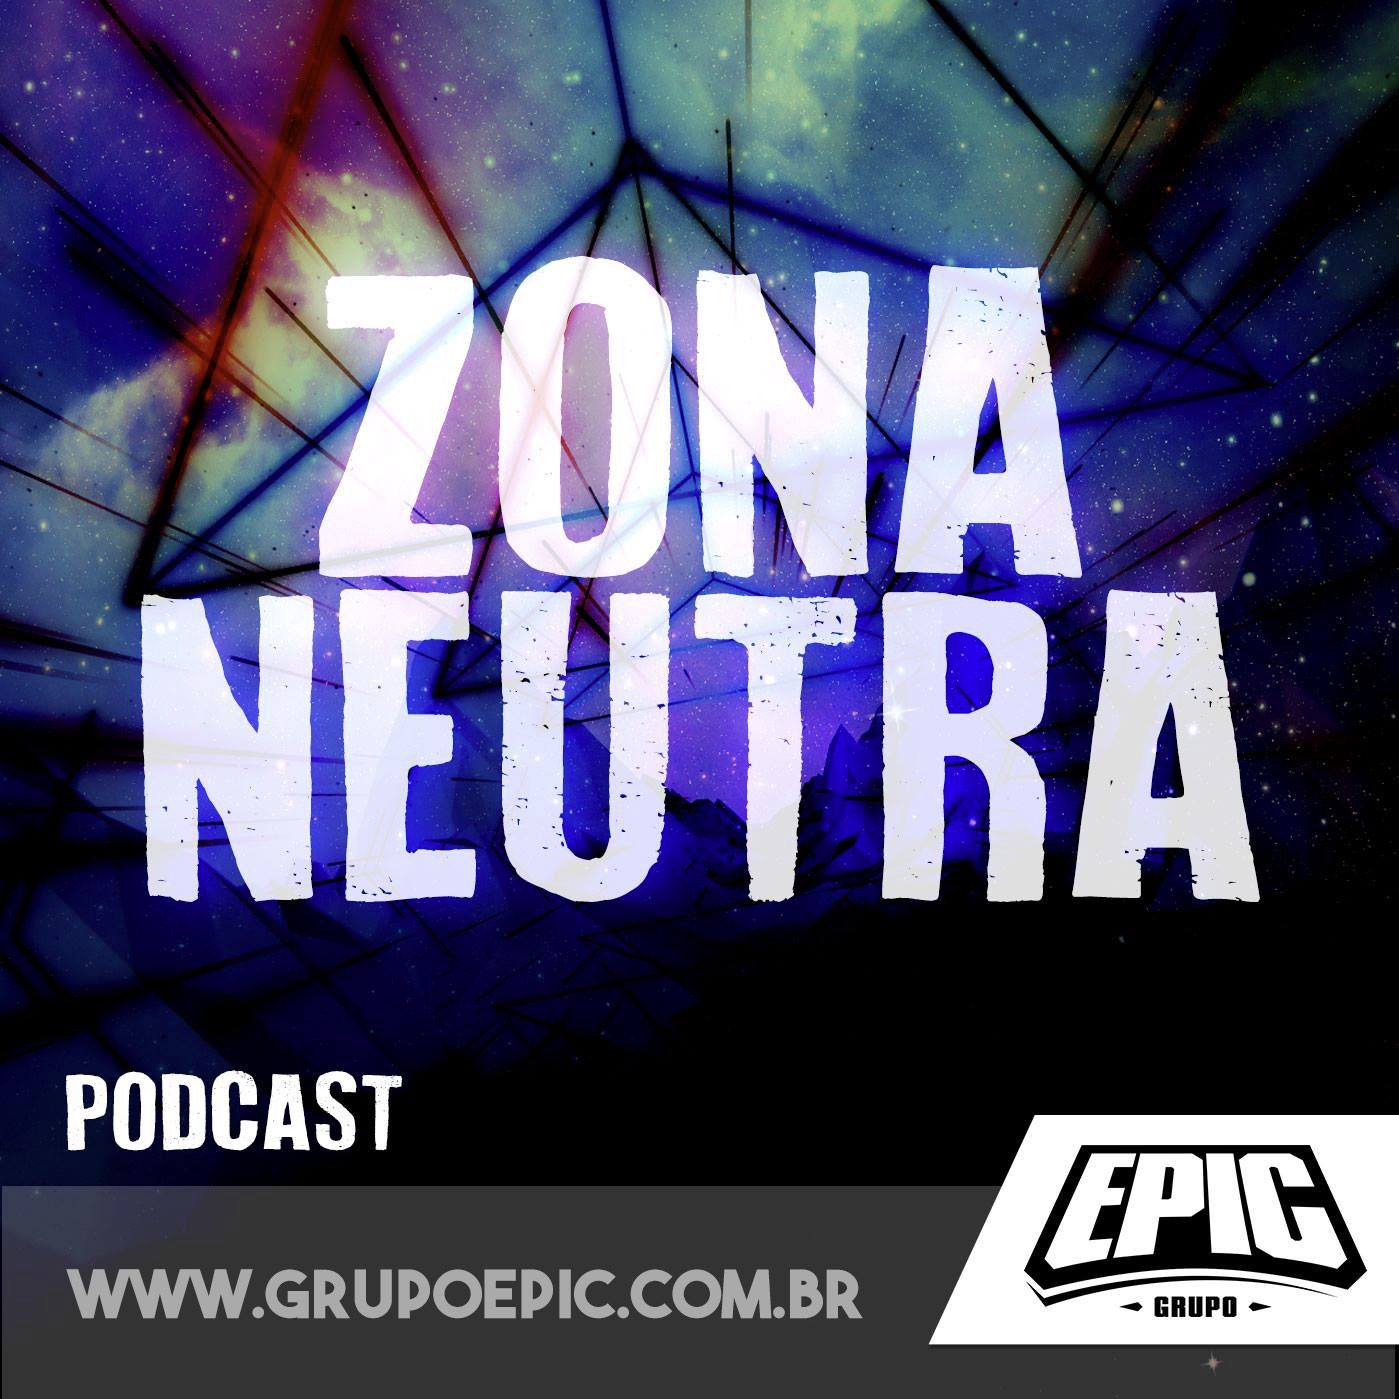 ZONA NEUTRA S02E08- E3 2017